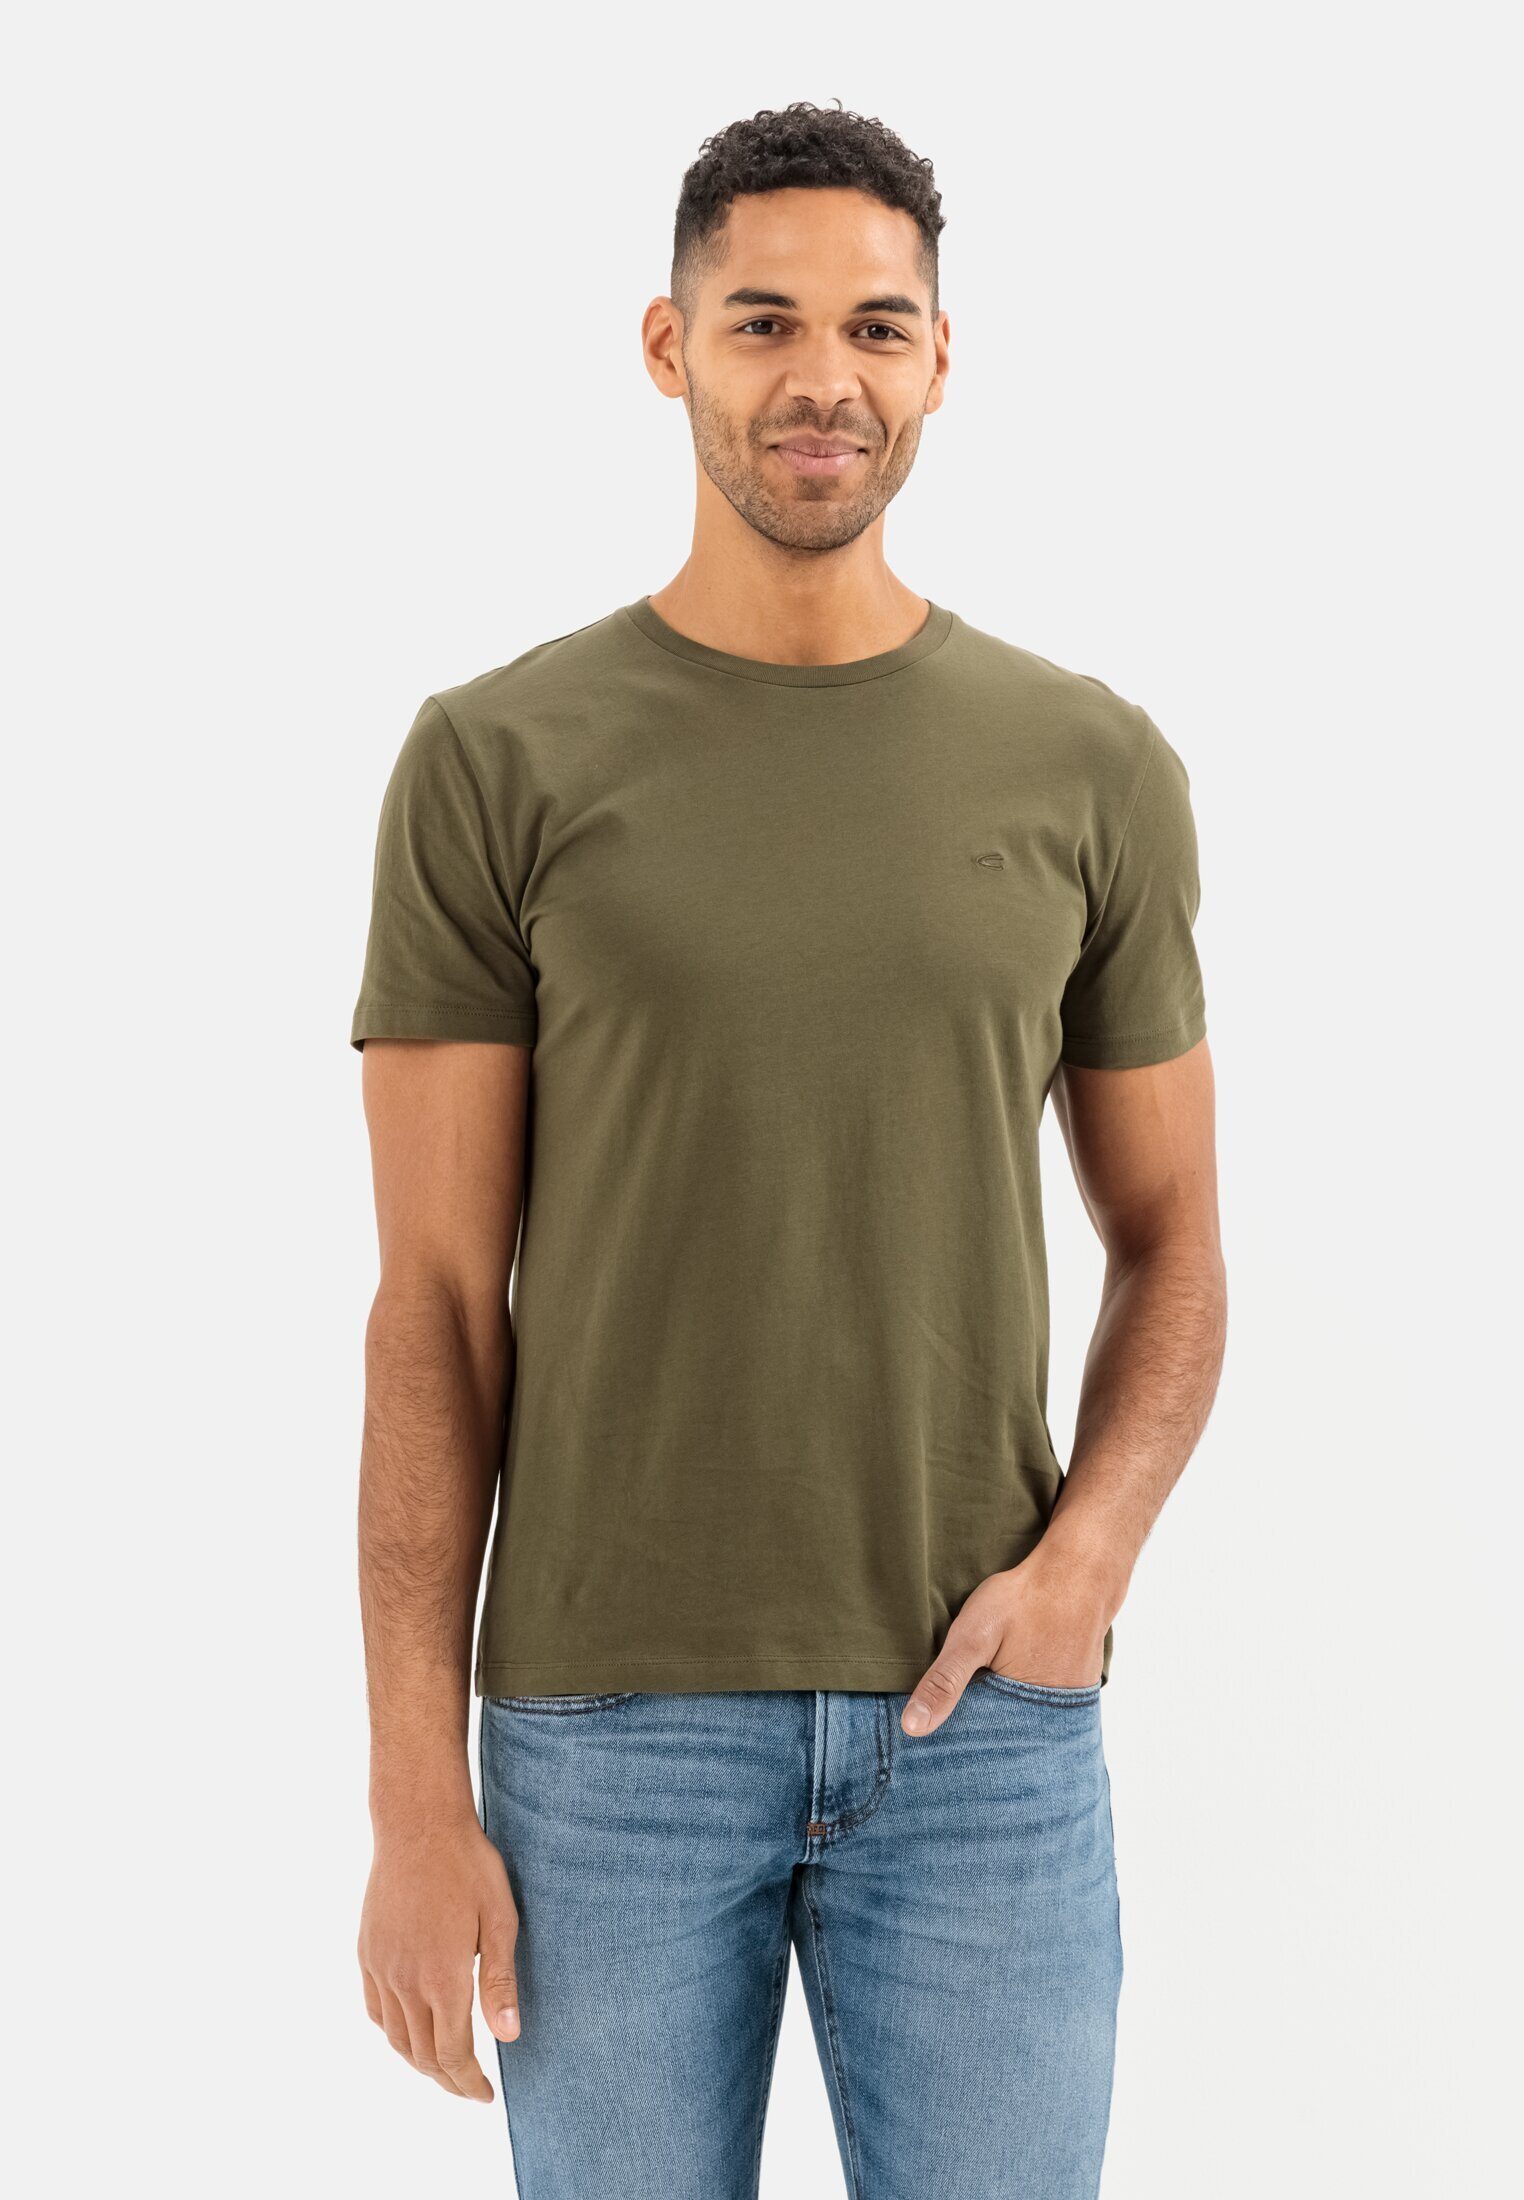 active Oliv Dunkel T-Shirt camel